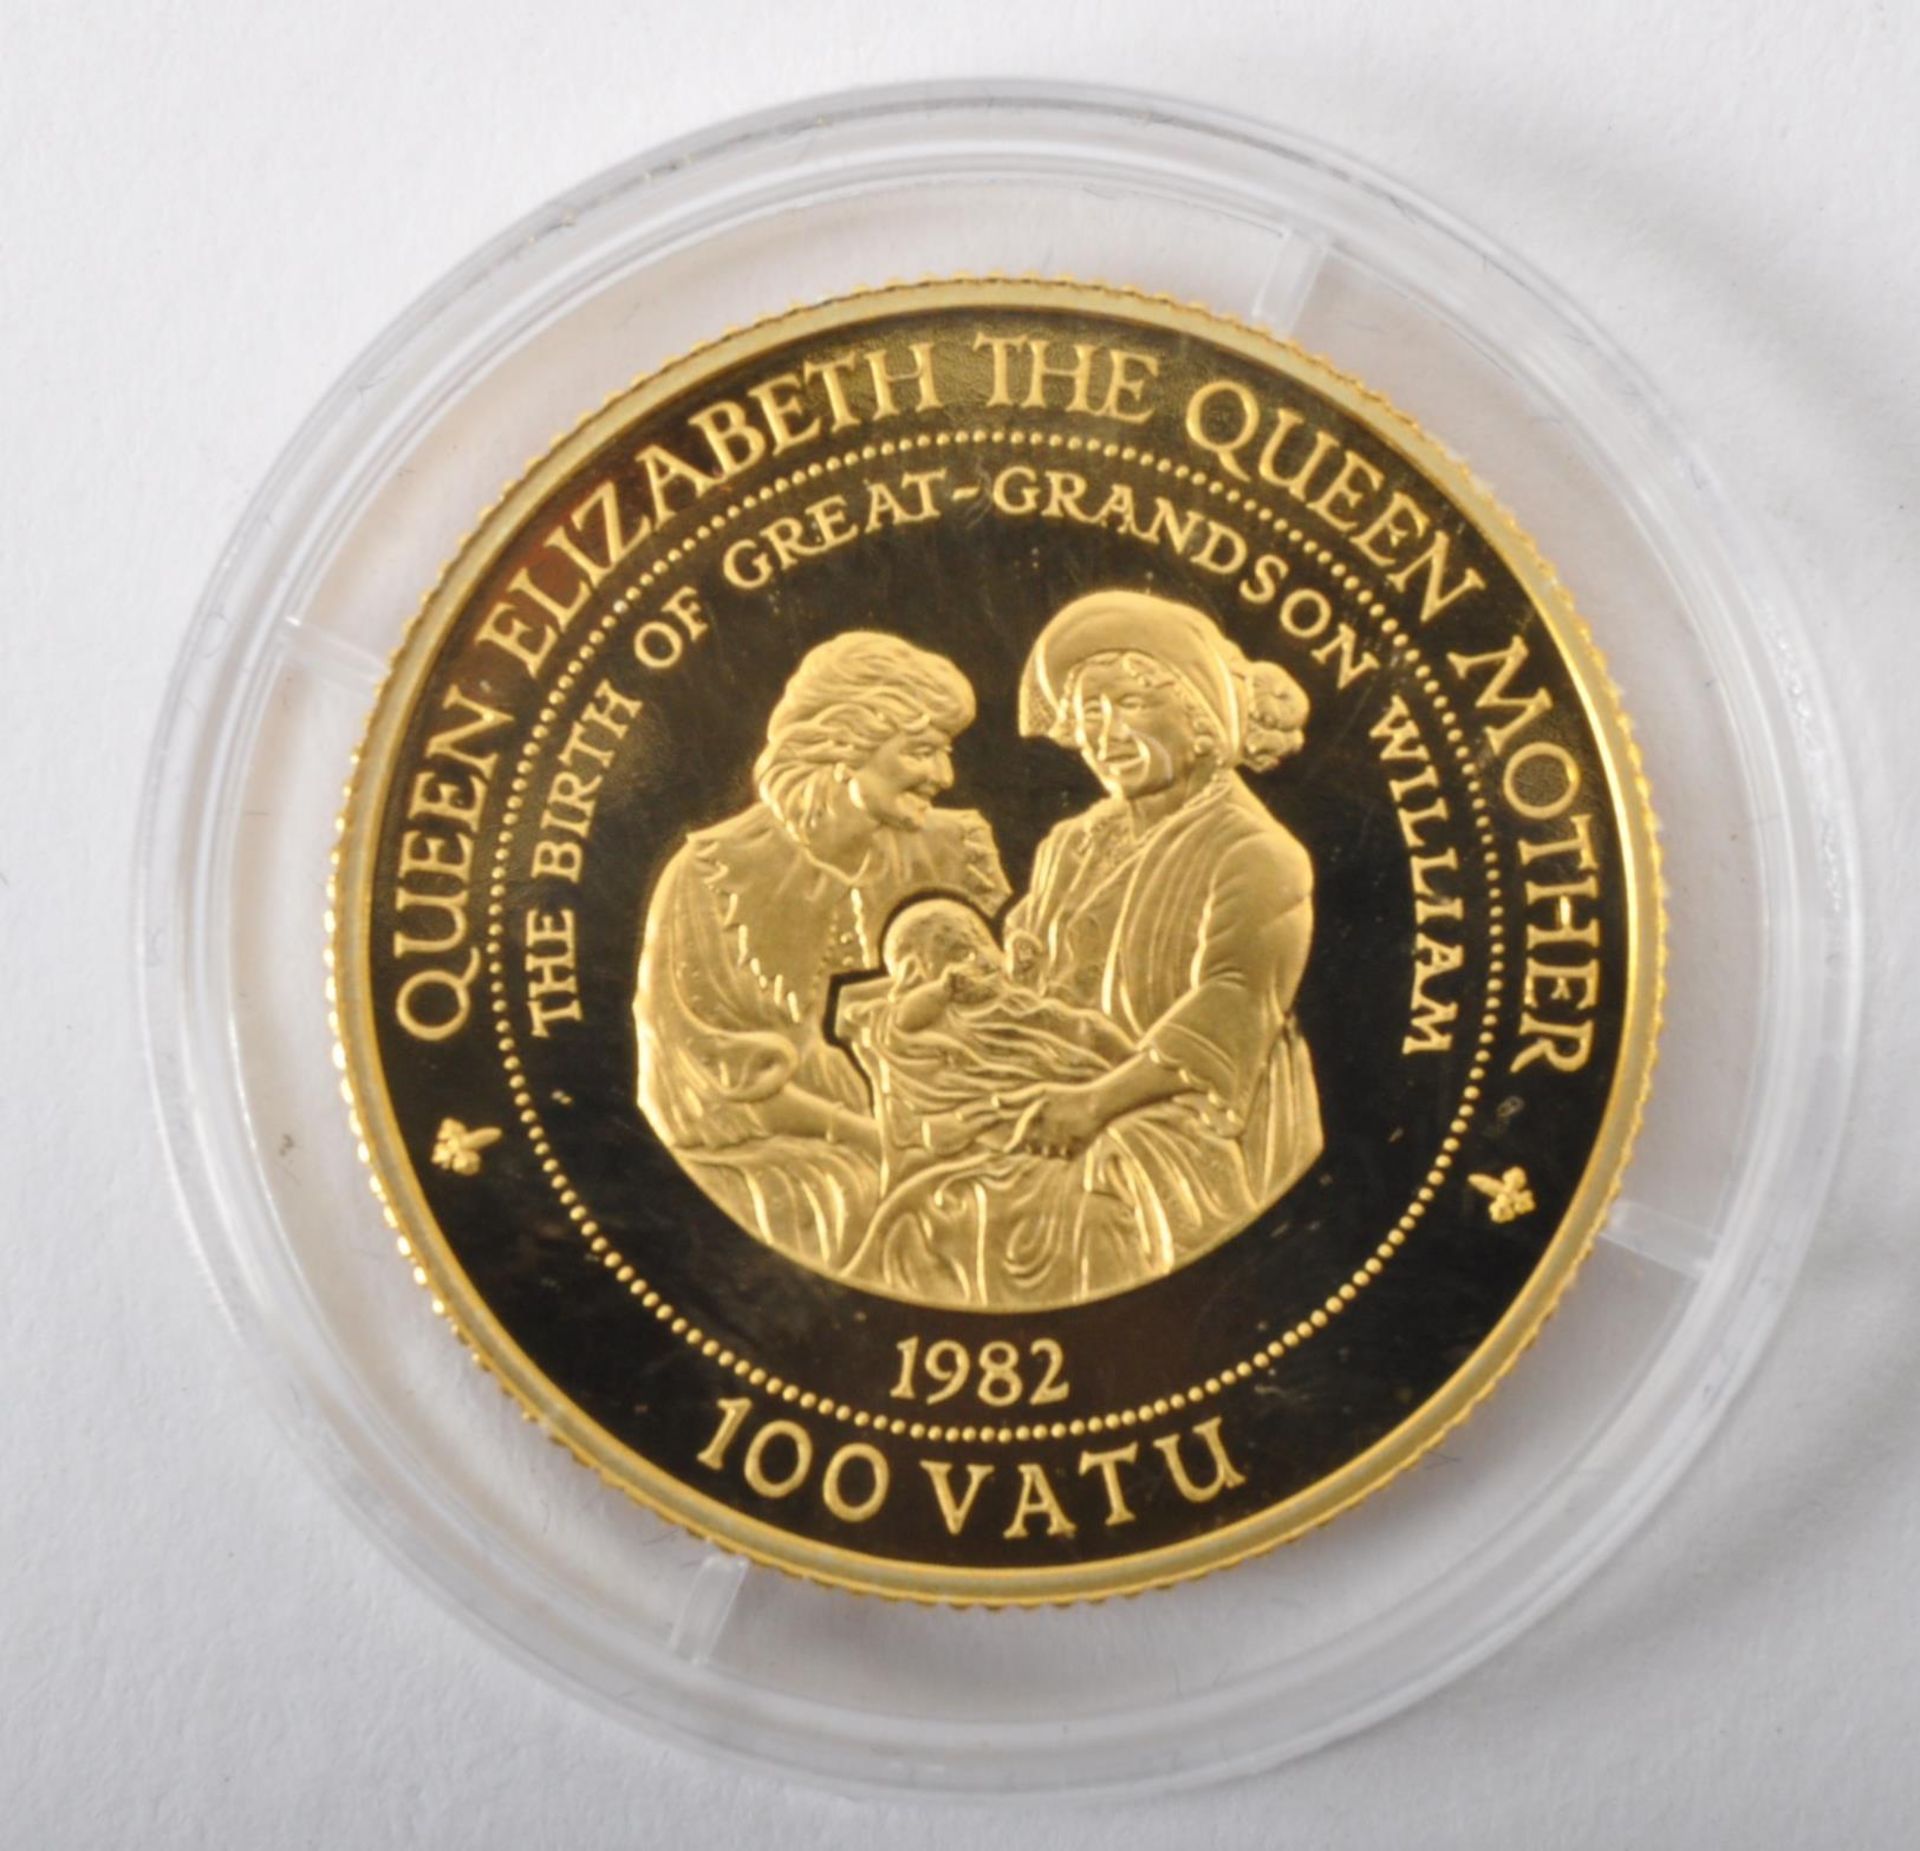 VANUATU 14CT GOLD PROOF 1997 100 VATU COIN - Image 3 of 3